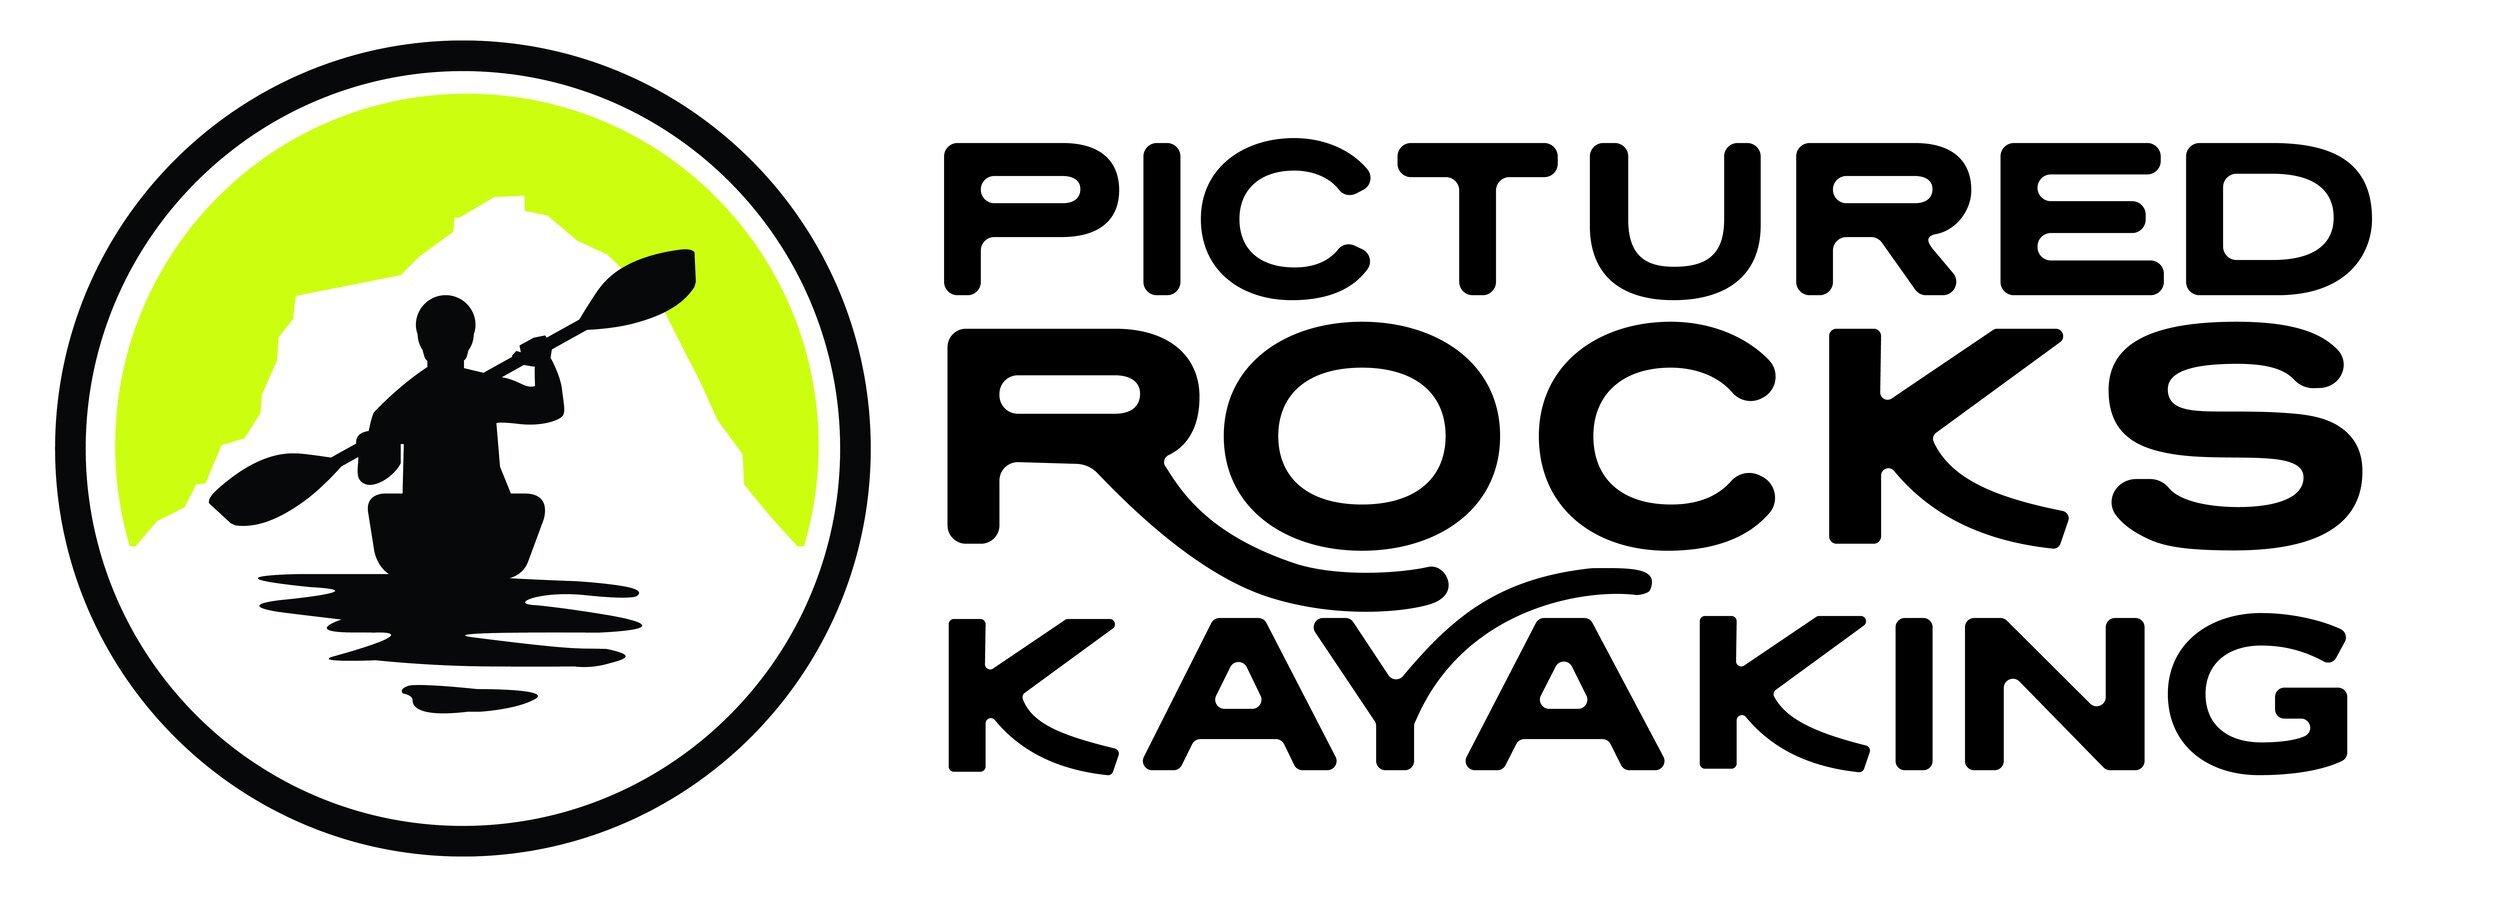 Pictured Rocks Kayaking Logo.jpeg